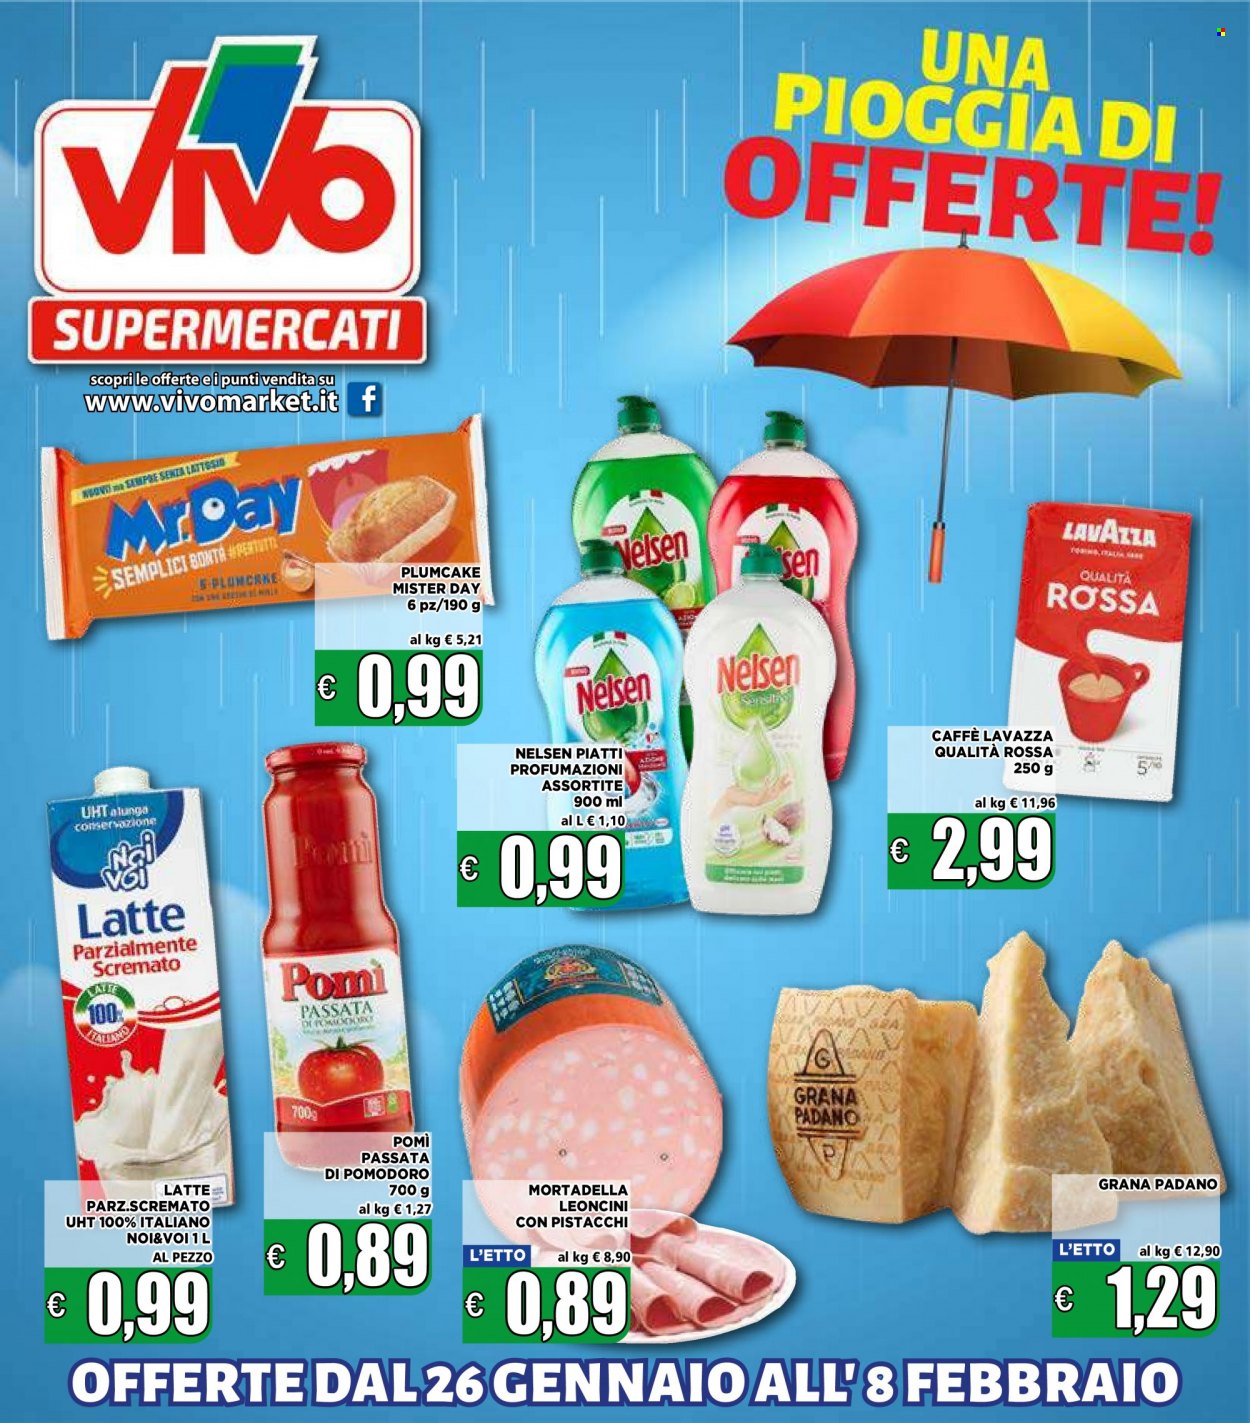 thumbnail - Volantino Supermercati VIVO - 26/1/2023 - 8/2/2023 - Prodotti in offerta - plumcake, mortadella, Grana Padano, latte parzialmente scremato, passata di pomodoro, caffè, Lavazza, vino. Pagina 1.